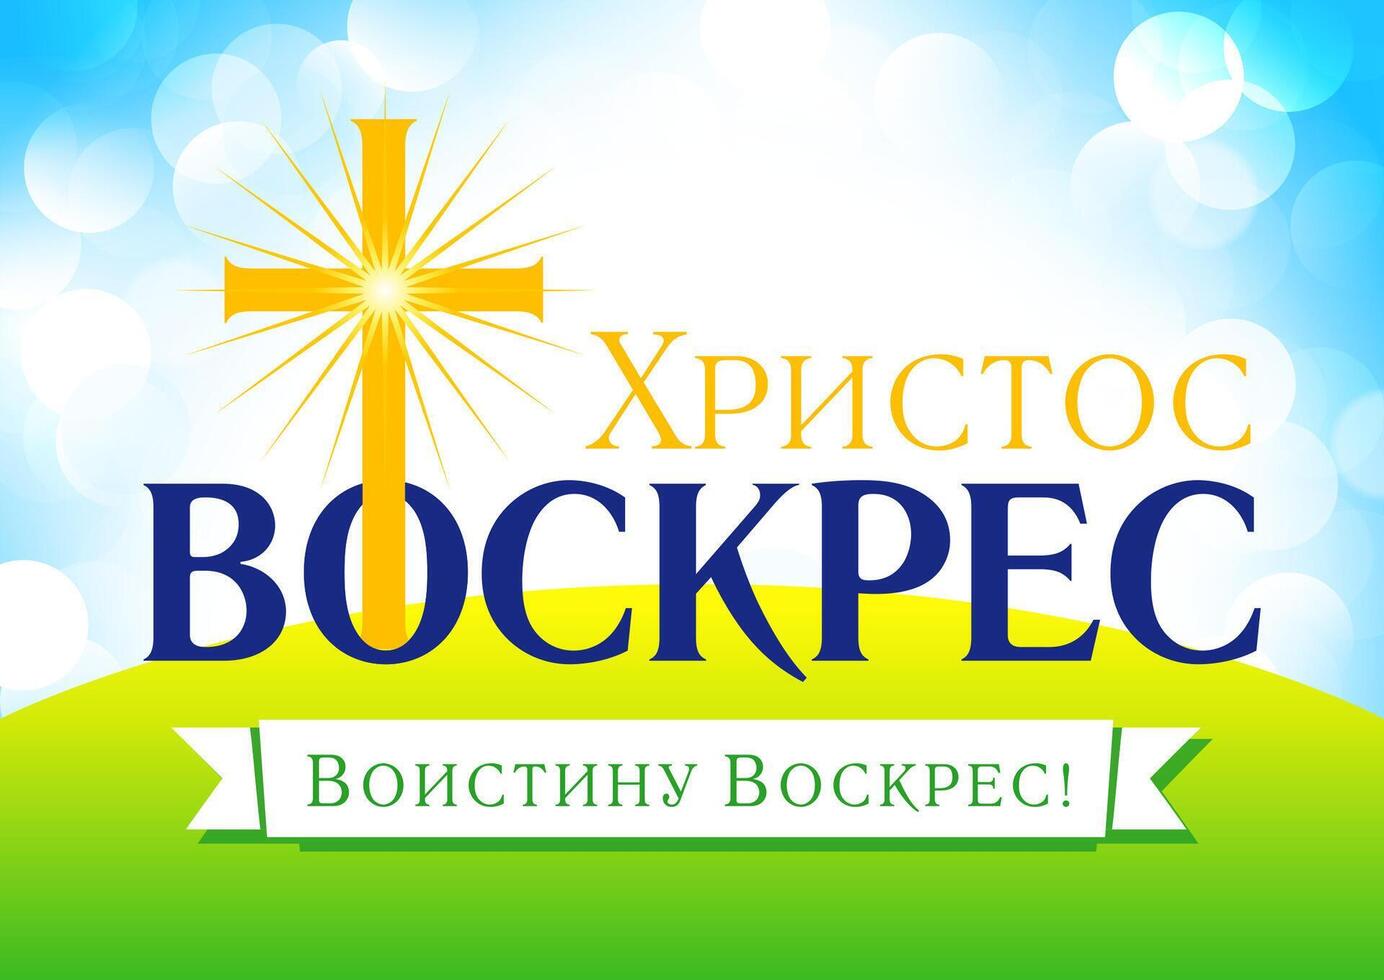 Pascua de Resurrección domingo, él es resucitado, ruso invitación tarjeta. vector